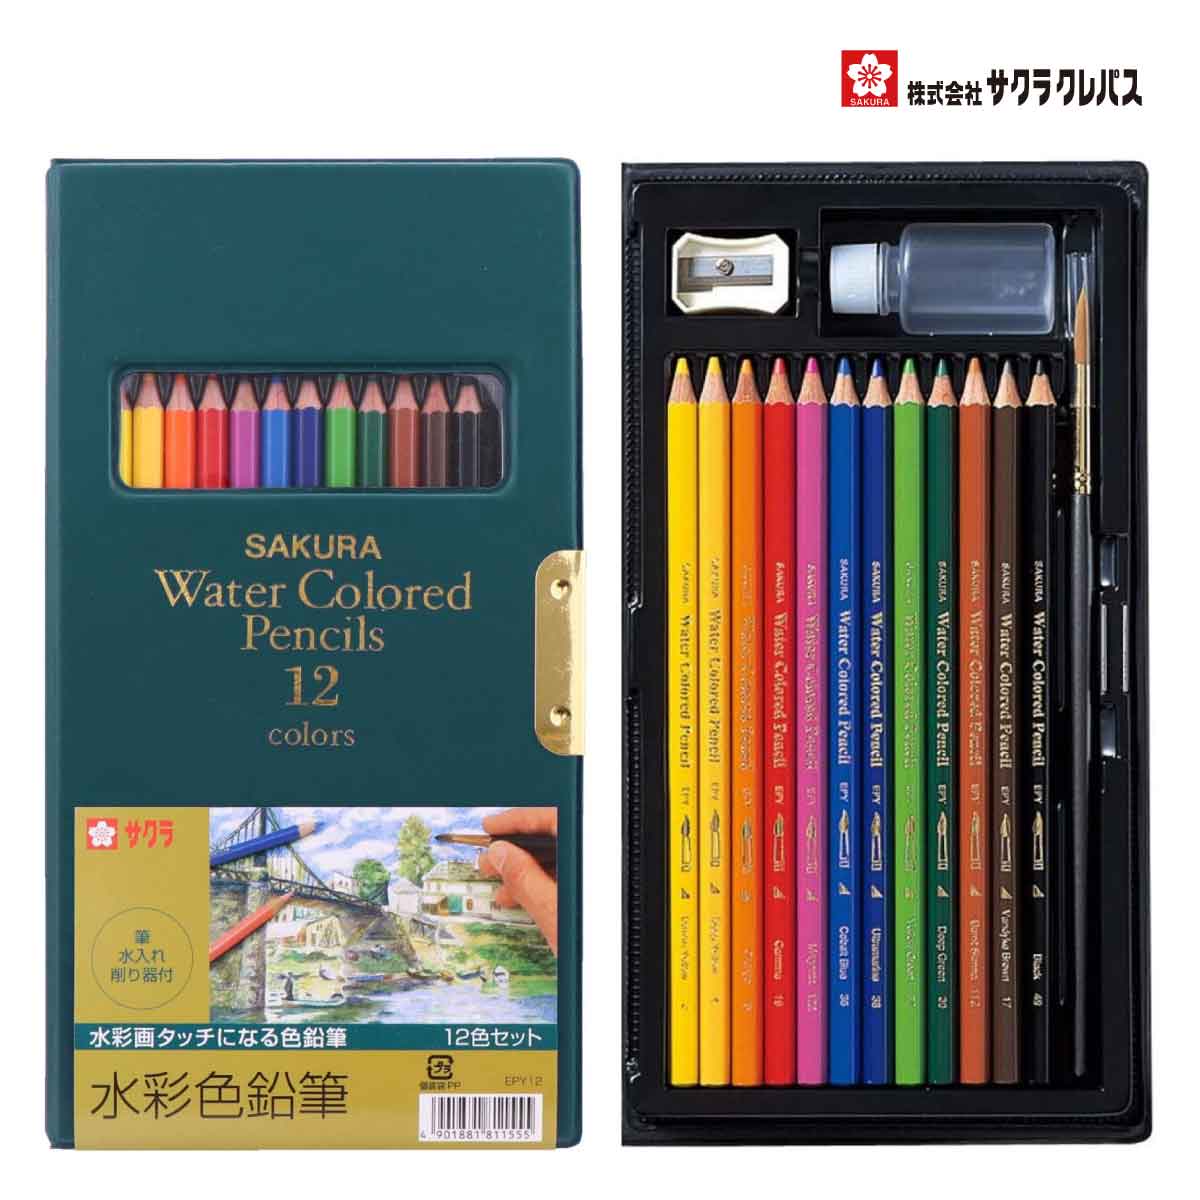 サクラクレパス 水彩画が描ける 水彩色鉛筆 12色 EPY12 WATER COLOR PENCILS 12 COLORS